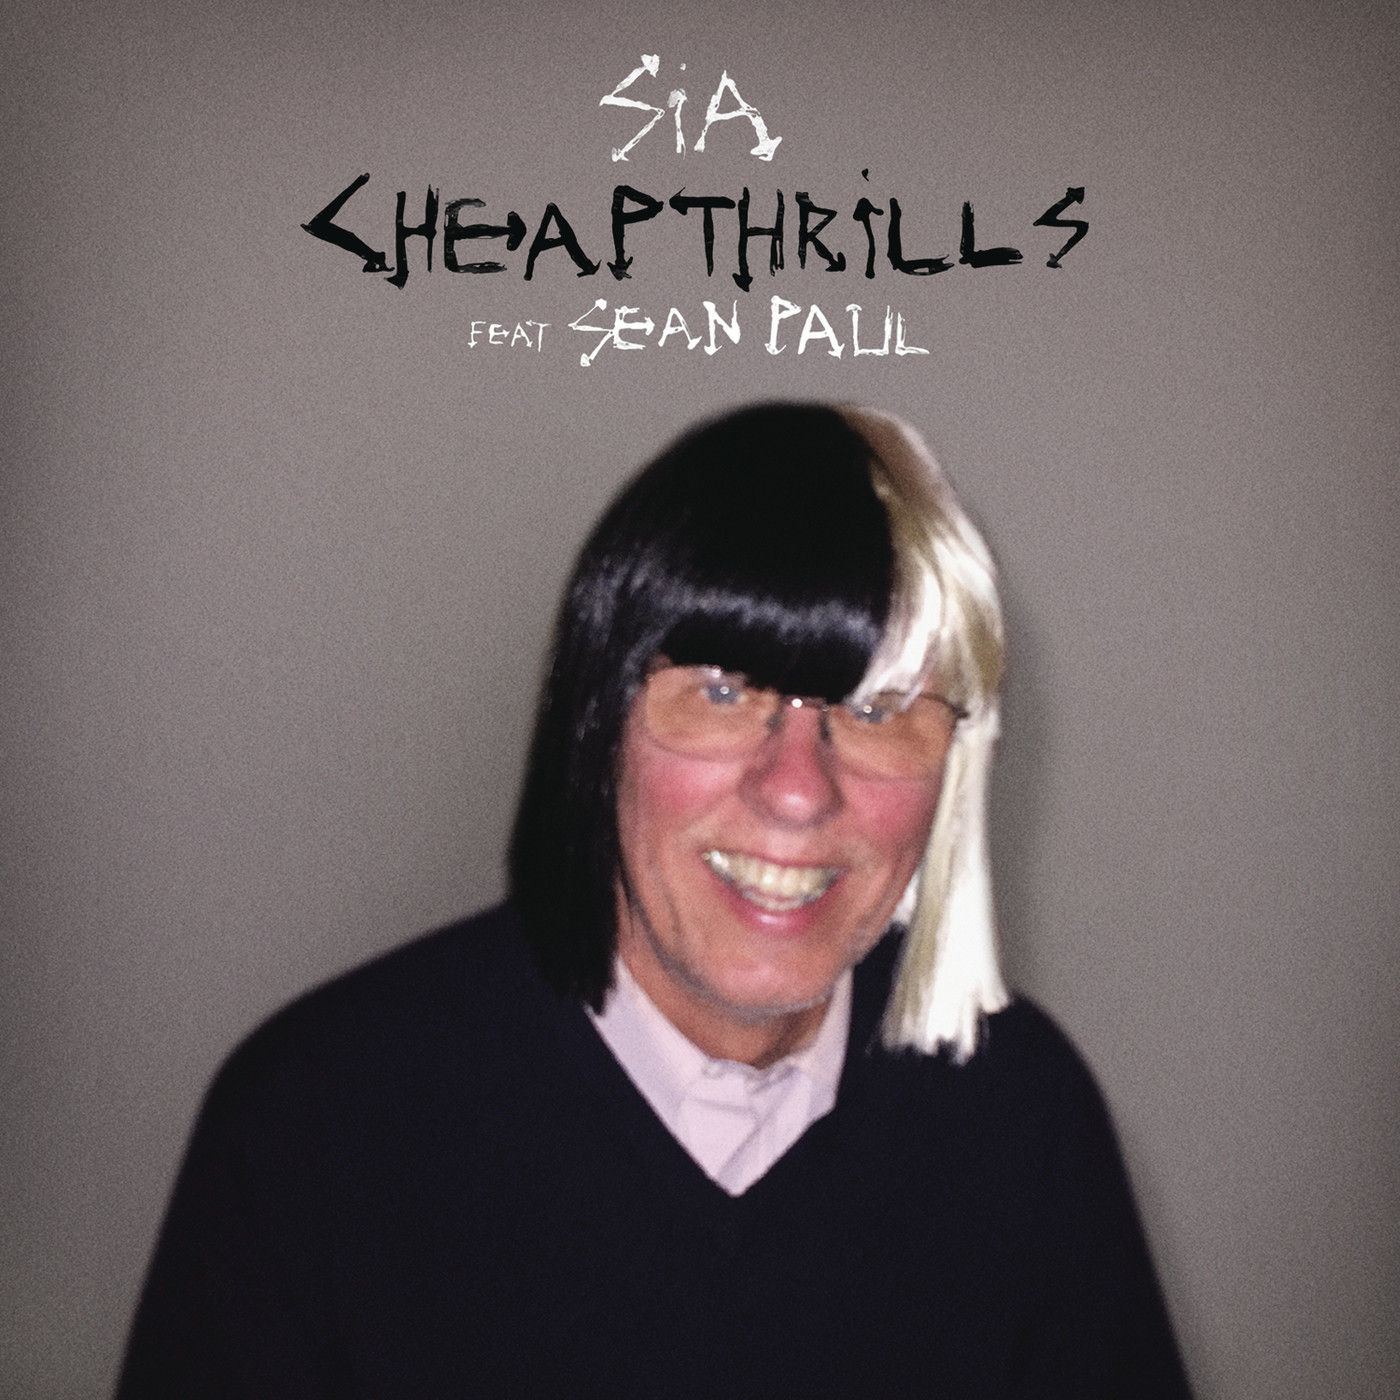 [House] Sia - Cheap Thrills (feat. Sean Paul)